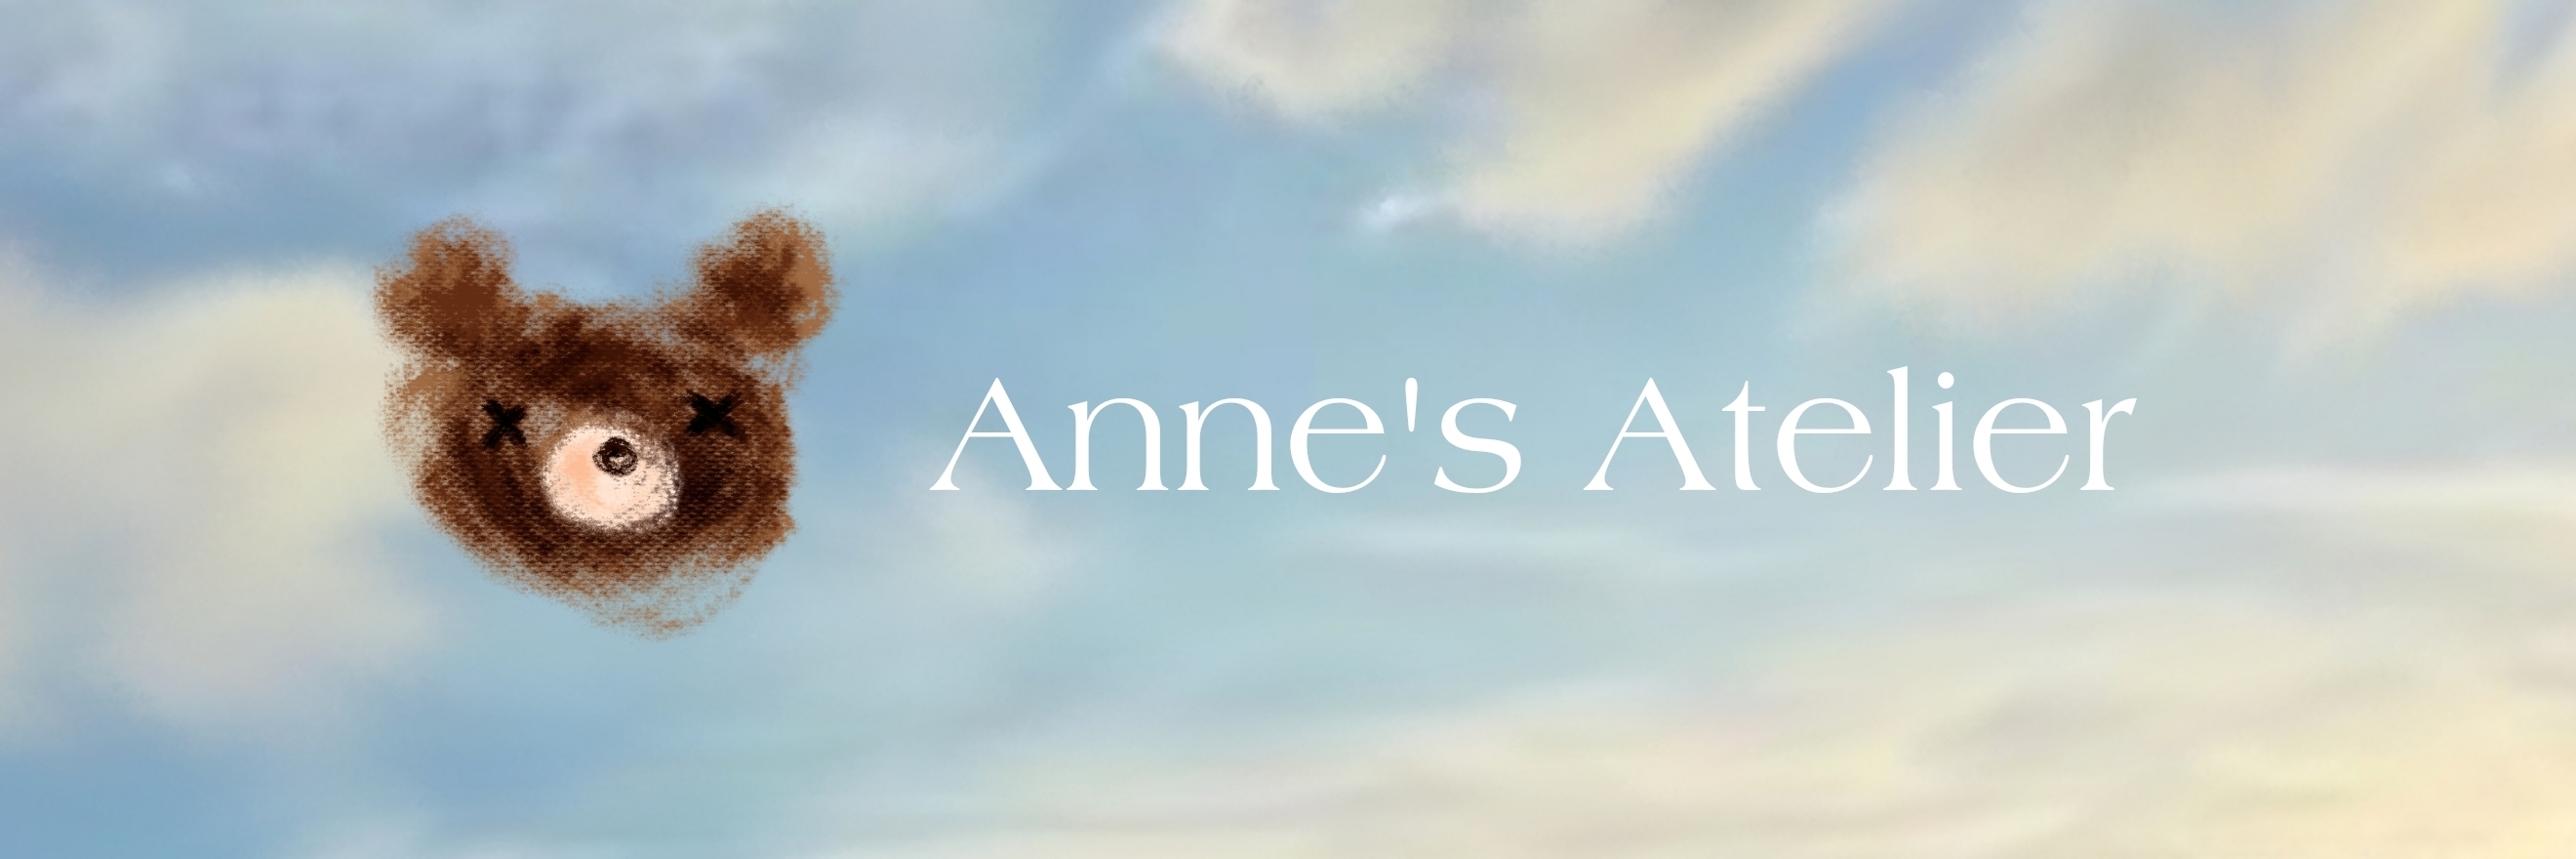 Anne's atelier